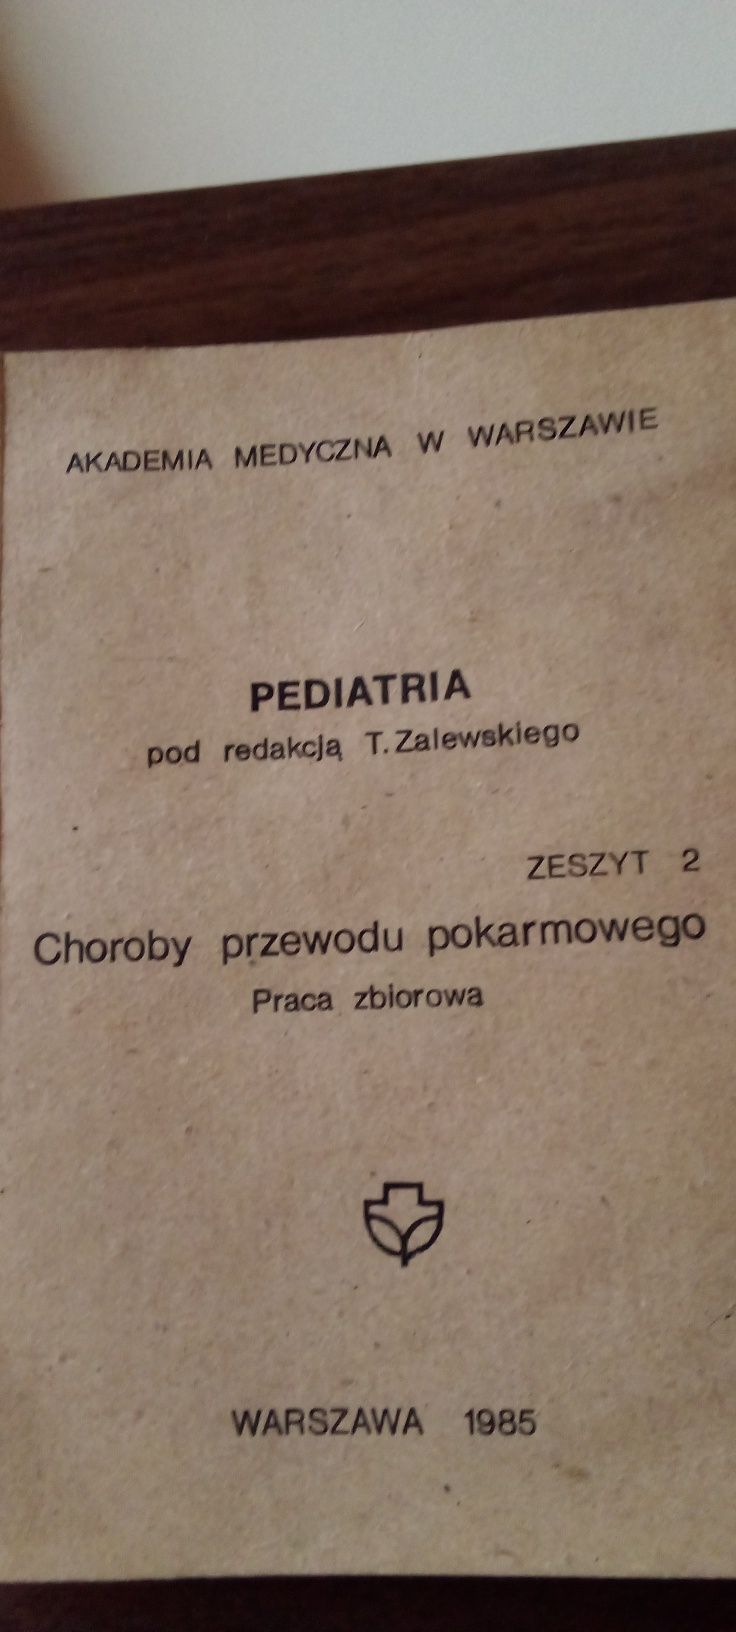 Pediatria pod redakcją T.Zalewskiego